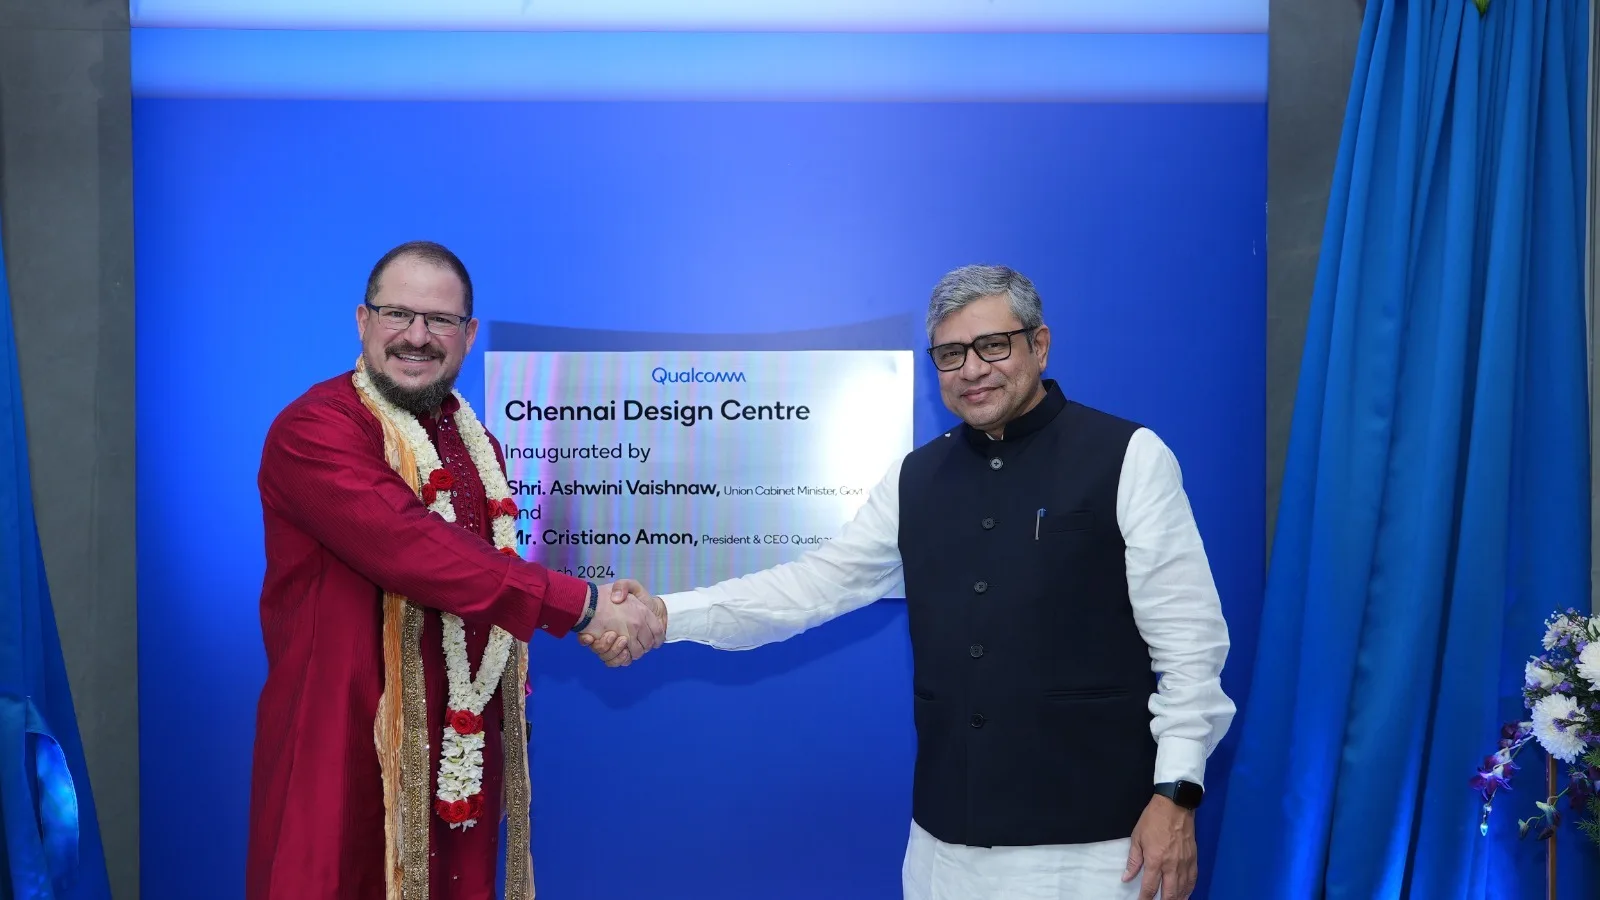 Centro de diseño inaugurado en Chennai